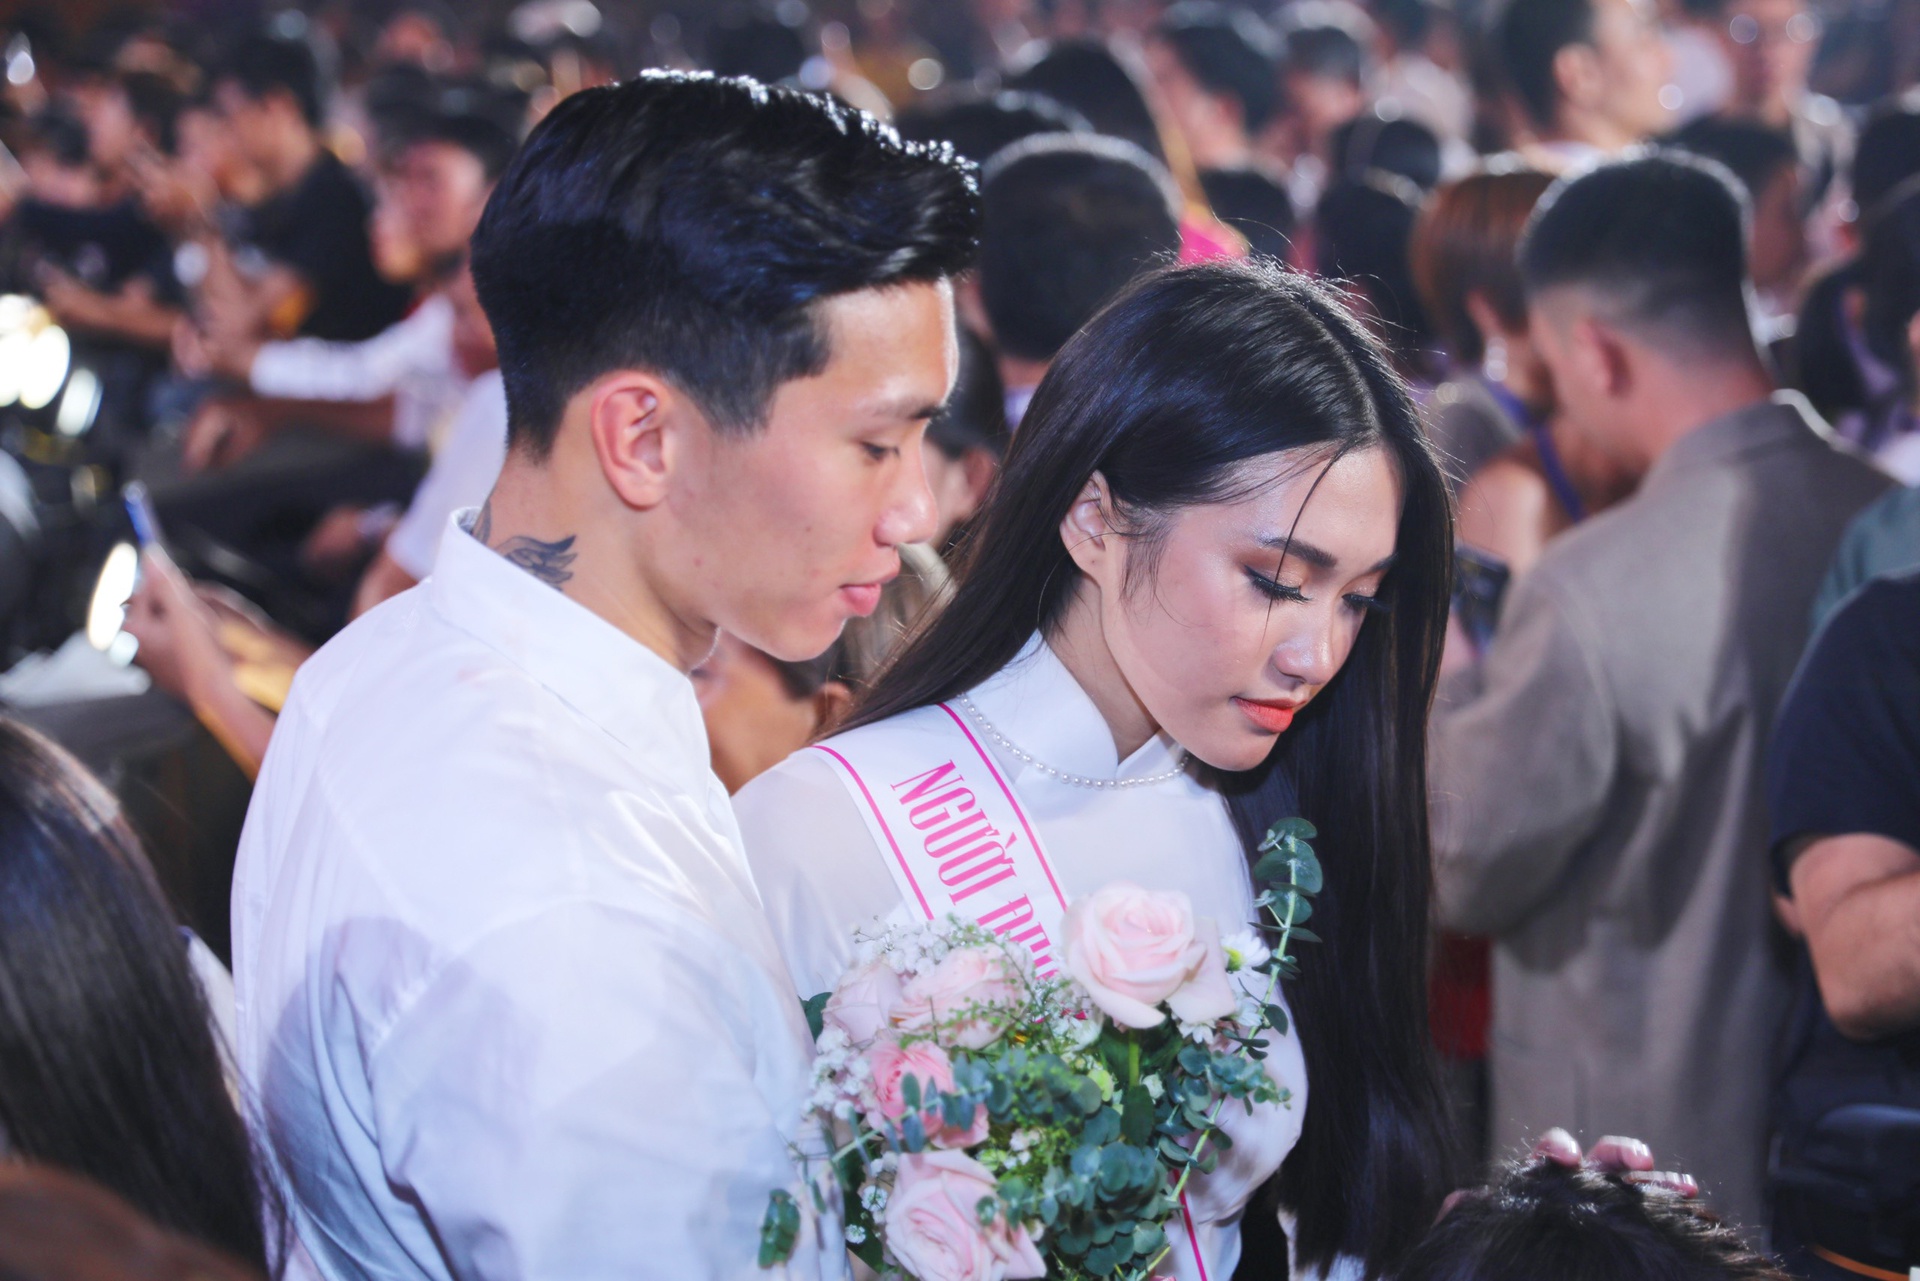 Đoàn Văn Hậu từng khiến cư dân mạng xôn xao khi không ngần ngại thể hiện tình cảm với bạn gái trên sân khấu Chung kết cuộc thi Hoa hậu Việt Nam 2020